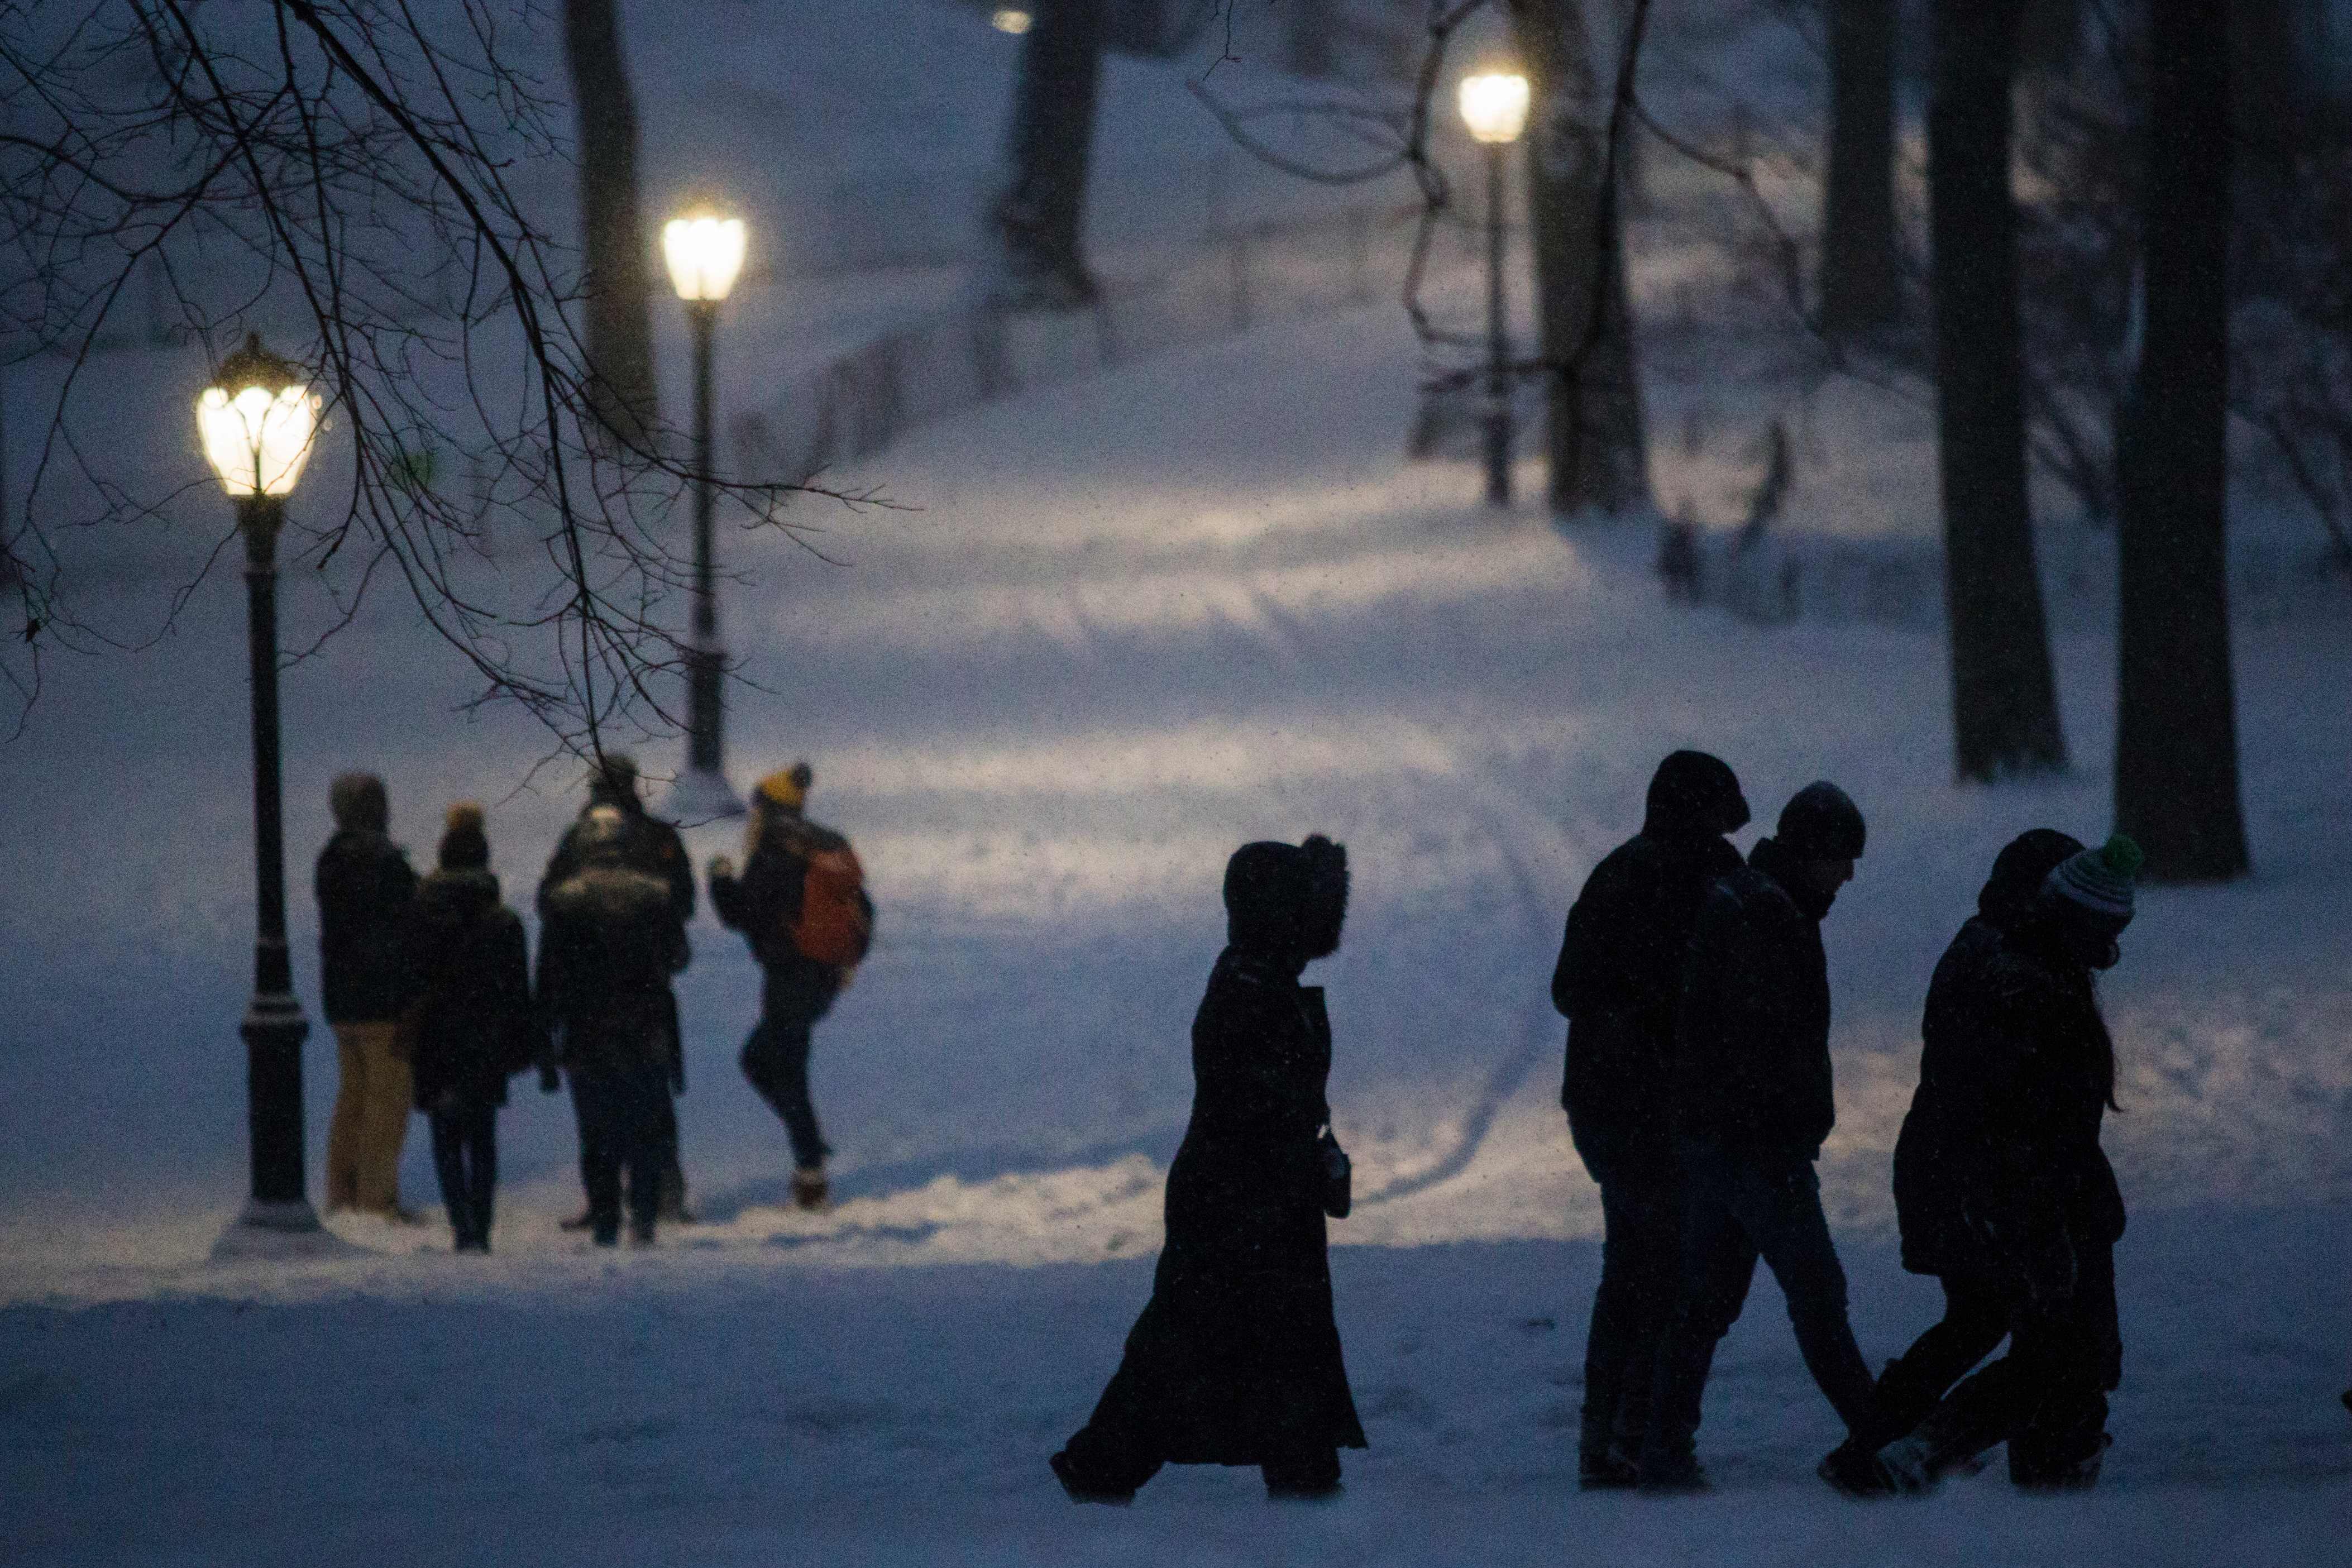 مواطنون أمريكيون يسيرون وسط الثلوج